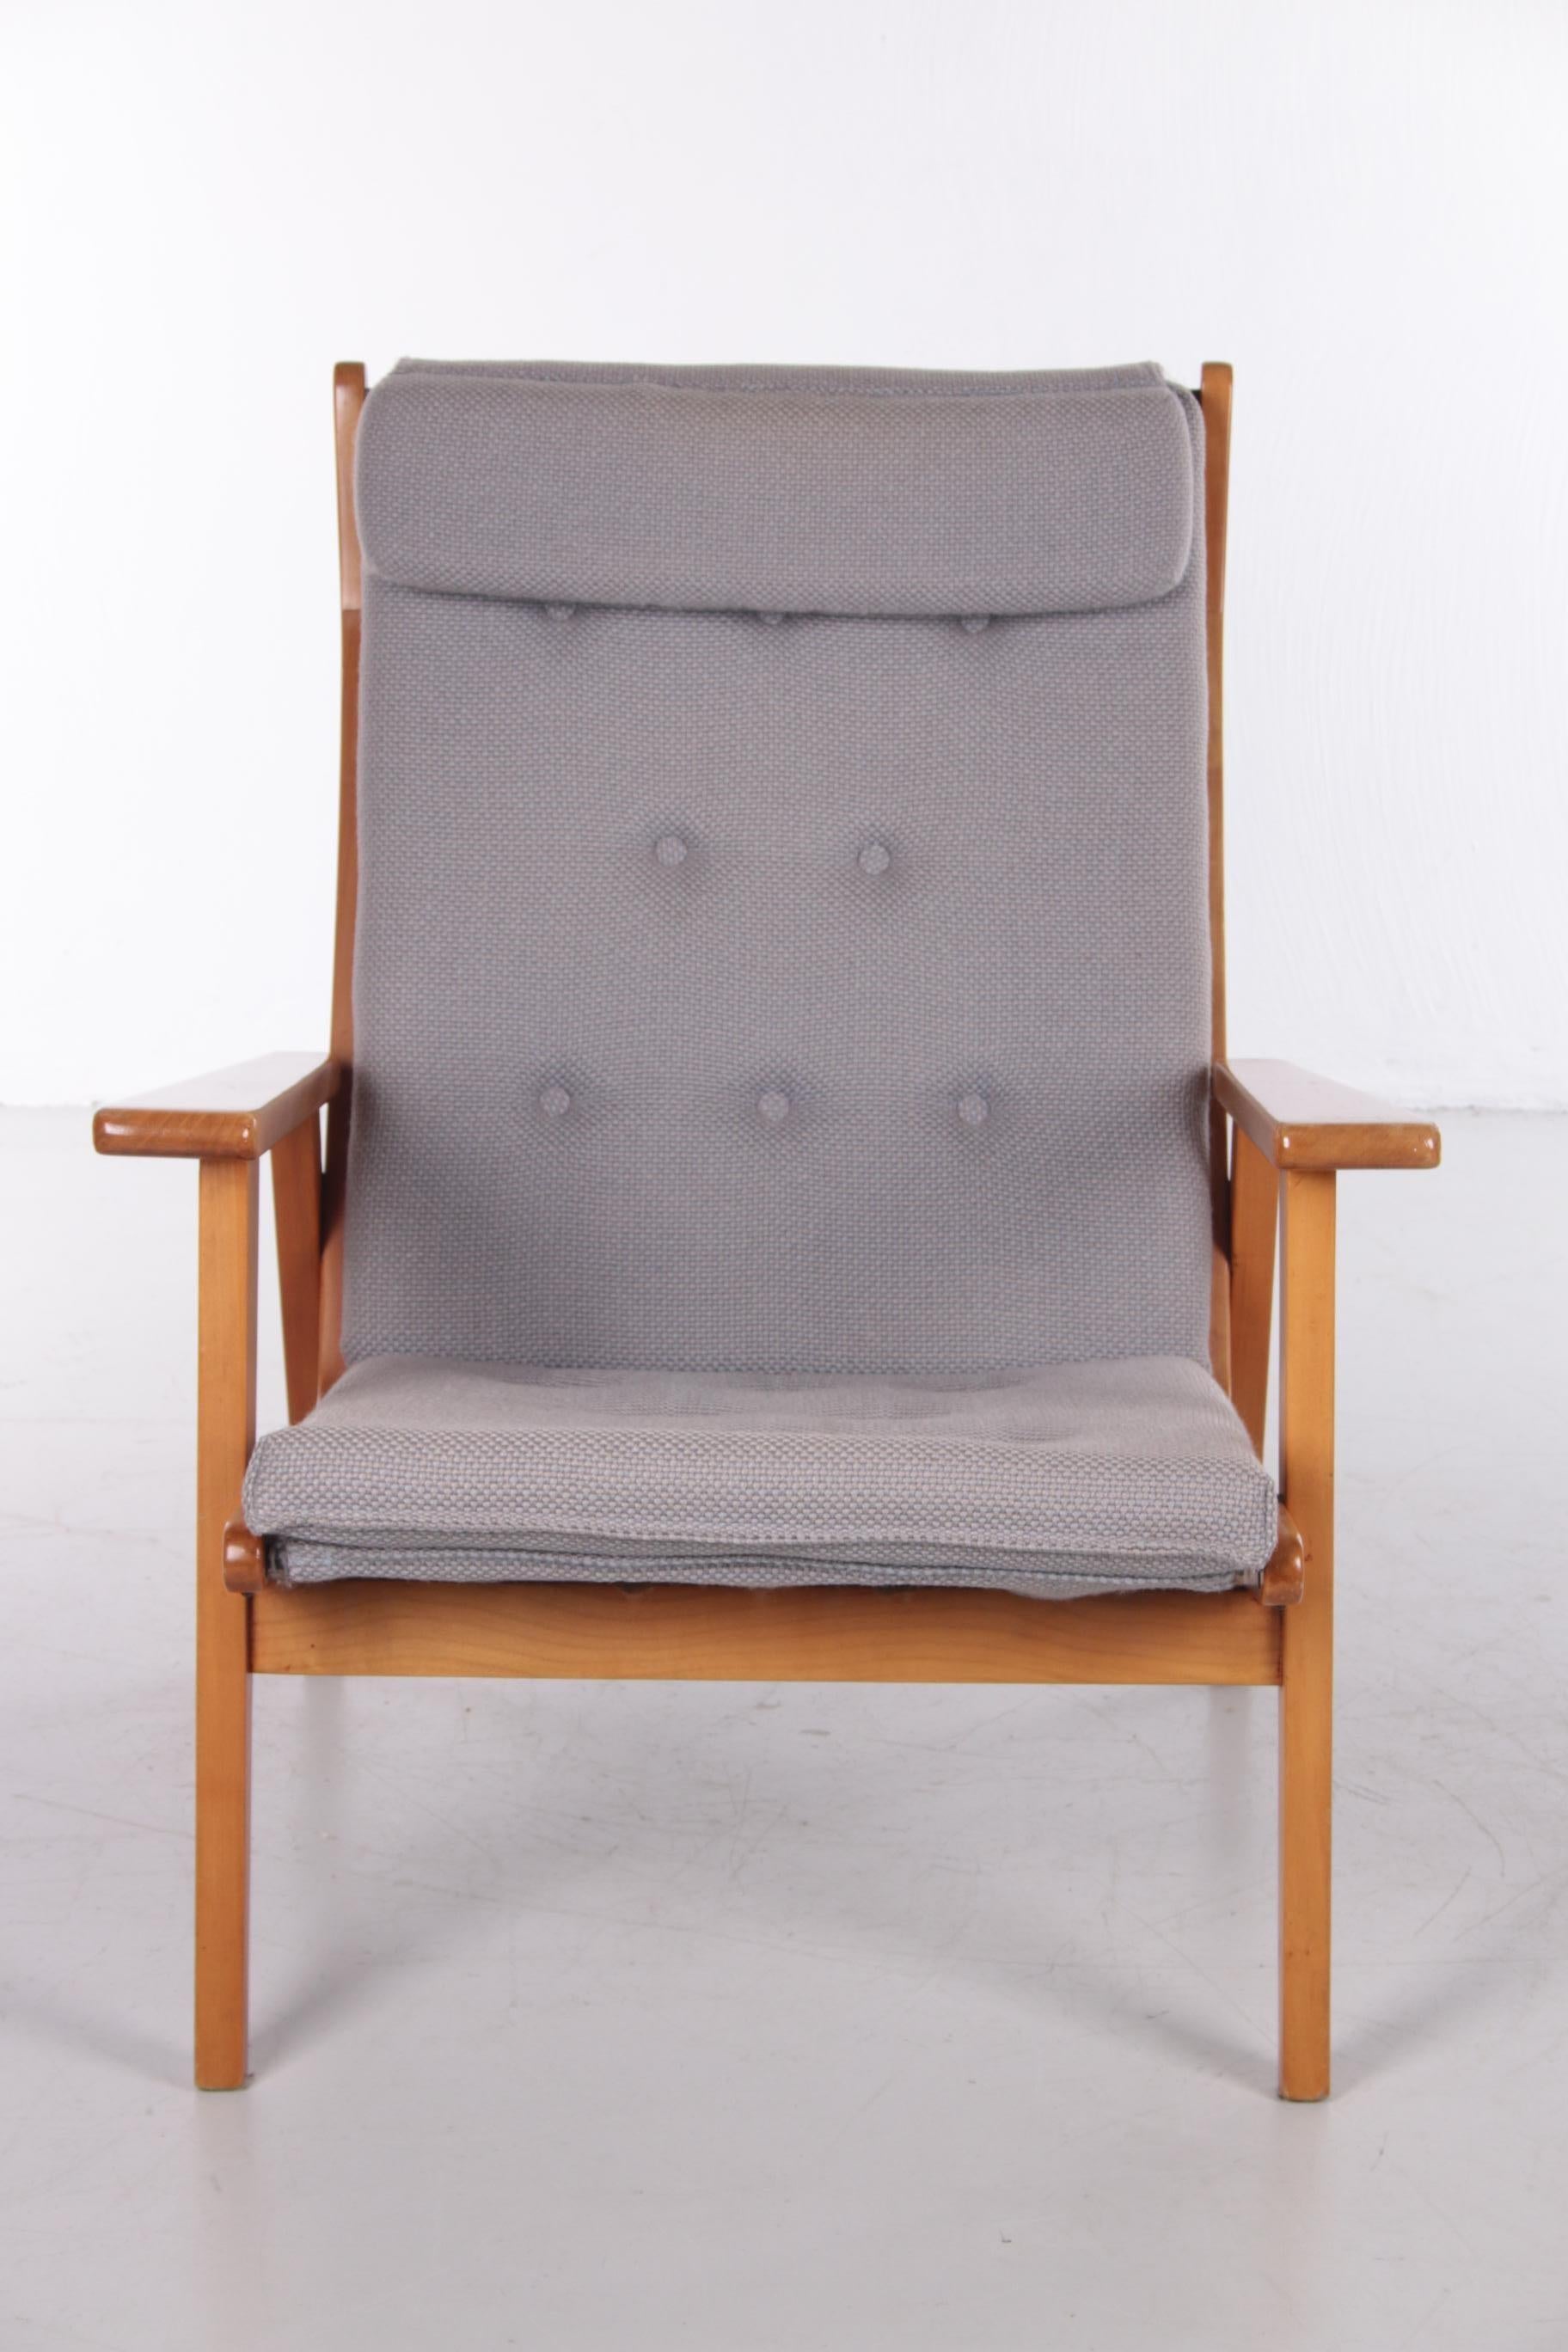 Rob Parry Lotus fauteuil vintage modèle 1611 4